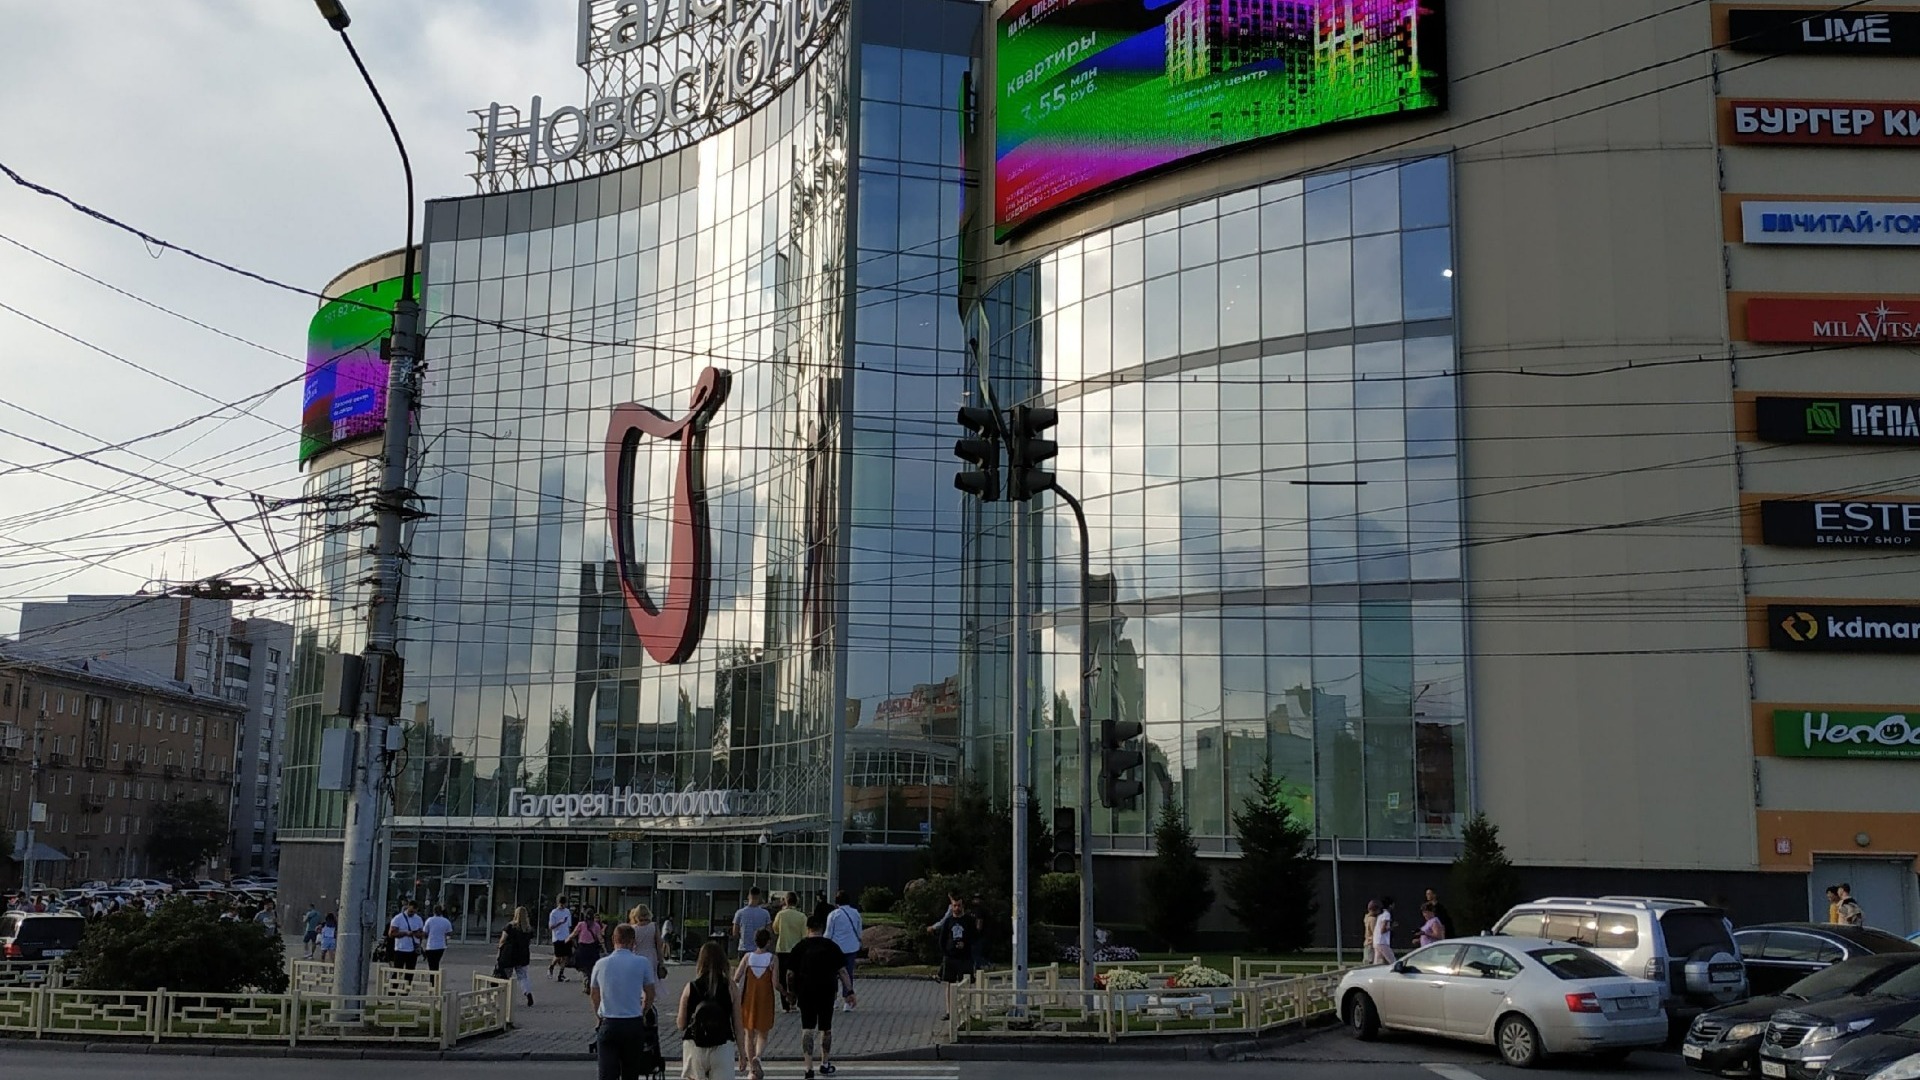 ТРЦ "Галерея" находится в самом центре Новосибирска возле Центрального рынка.